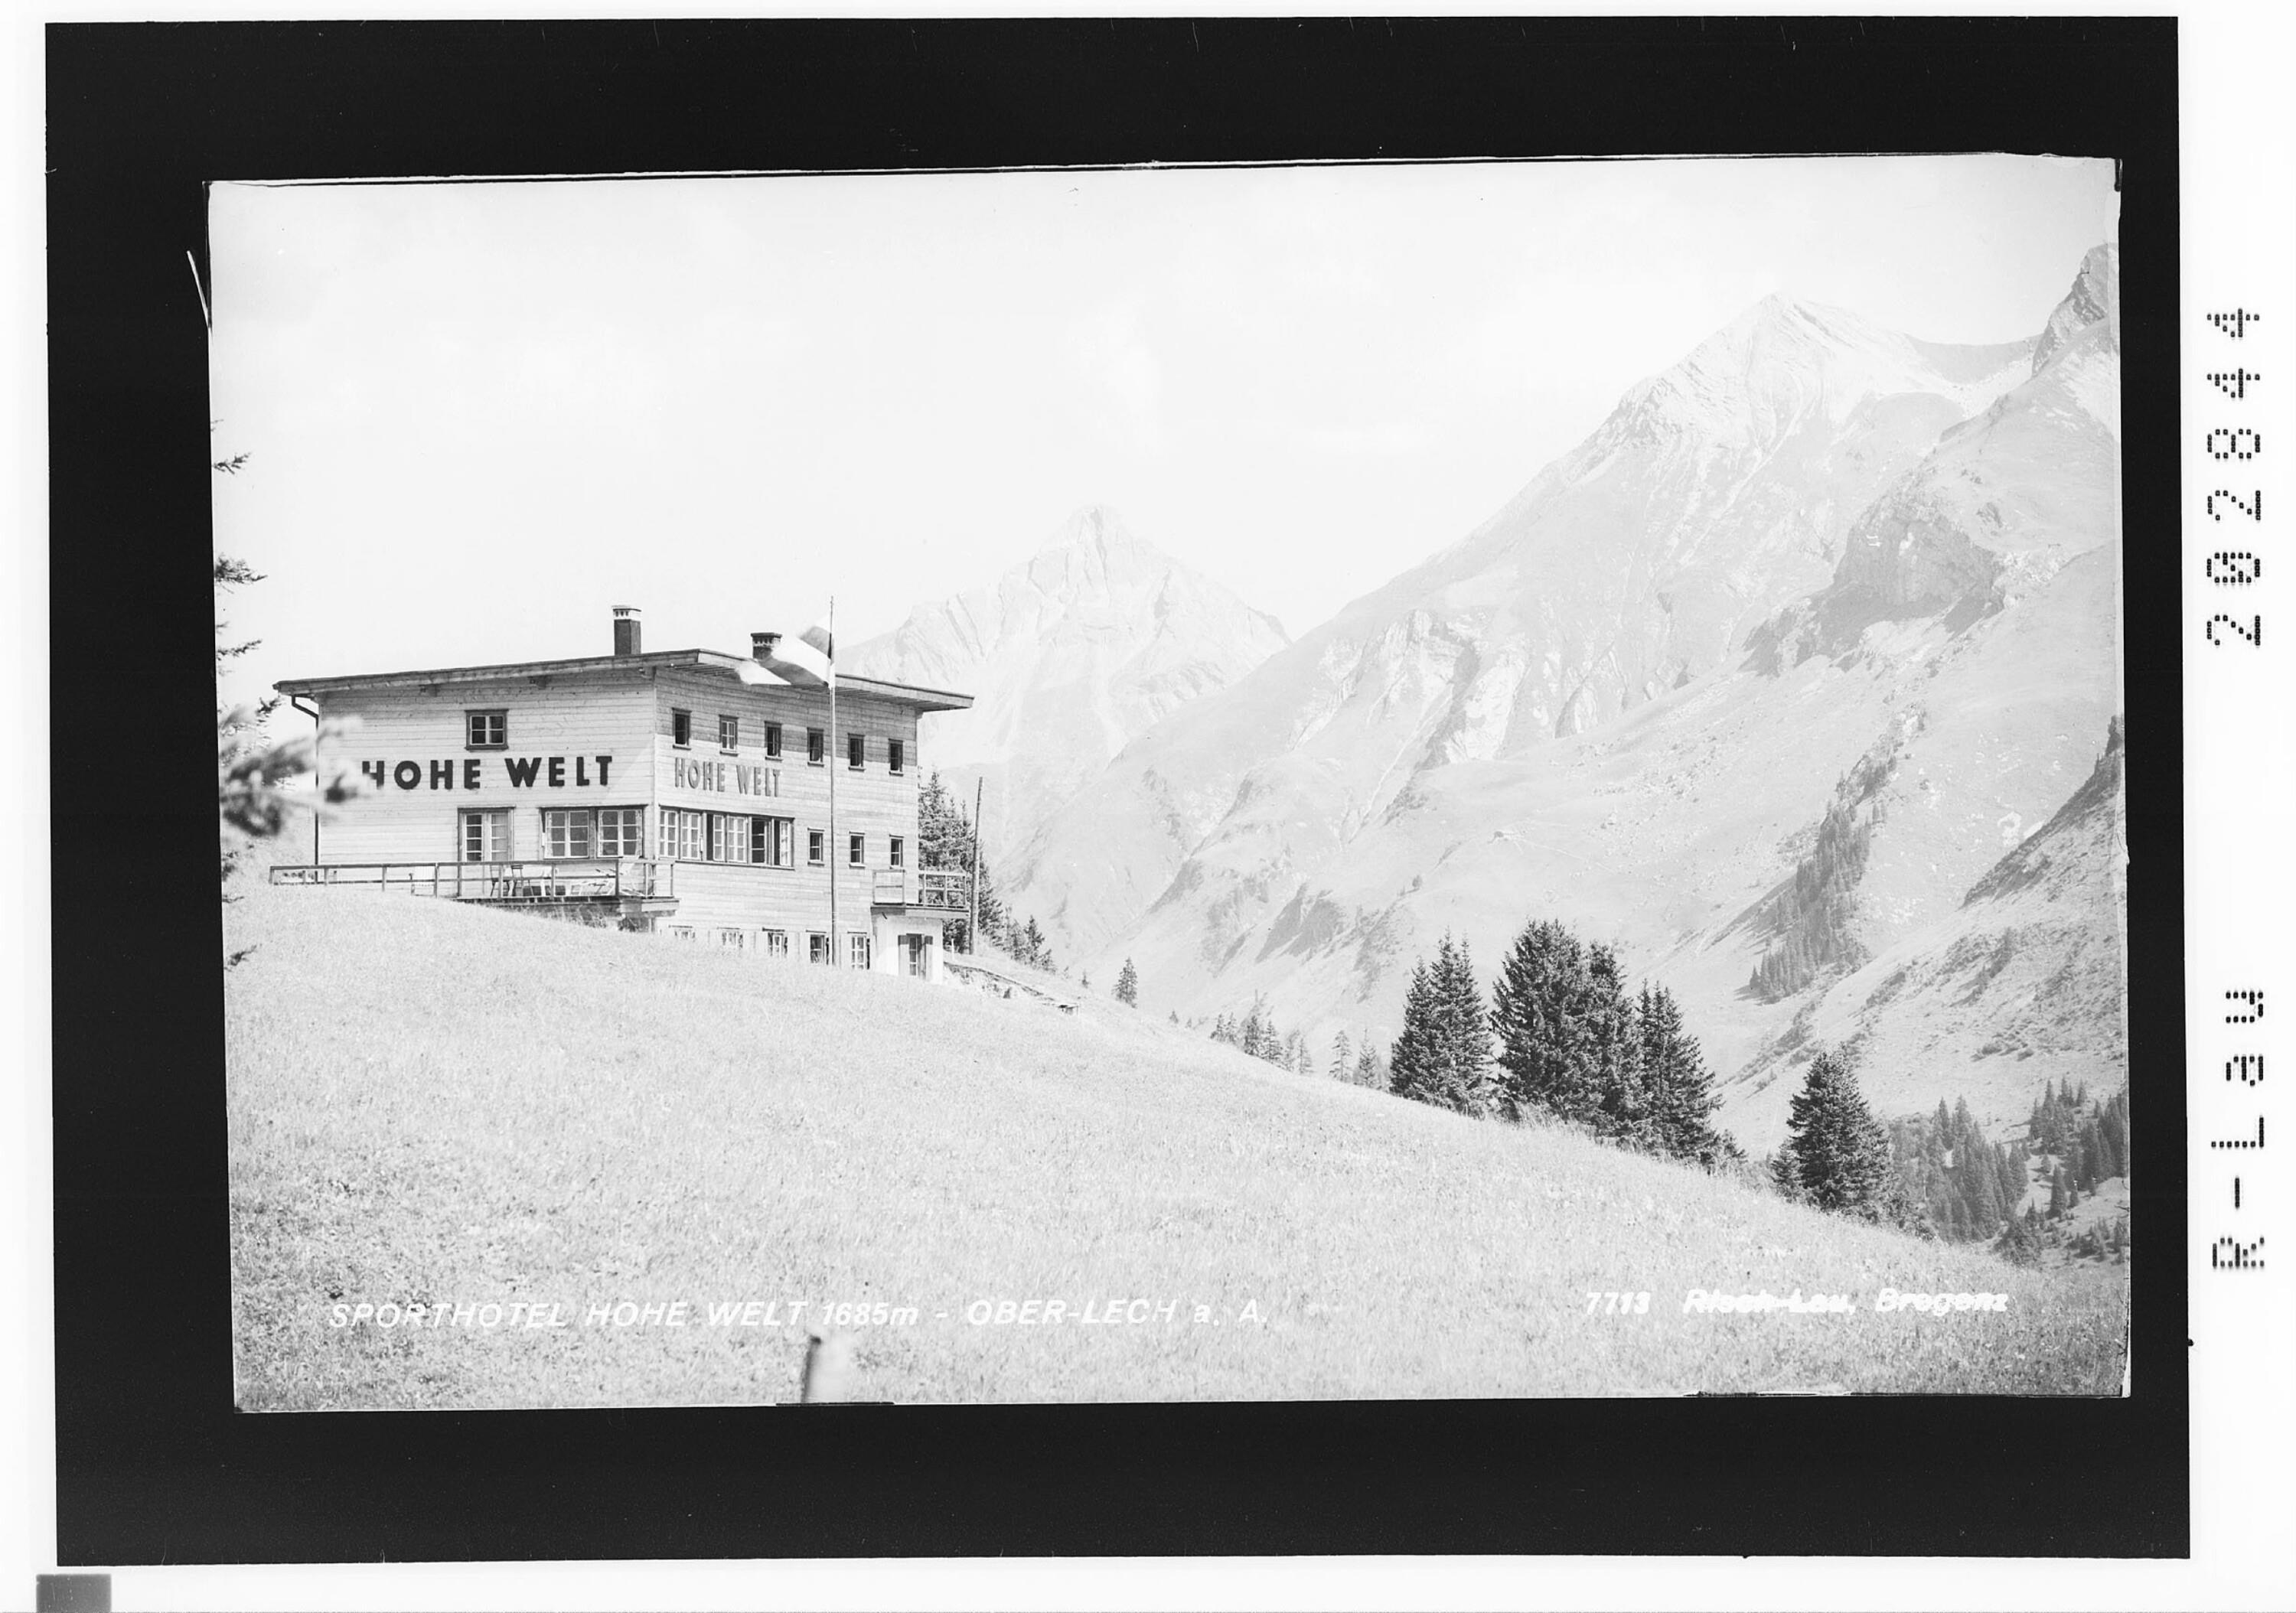 Sporthotel Hohe Welt 1685 m / Oberlech am Arlberg></div>


    <hr>
    <div class=